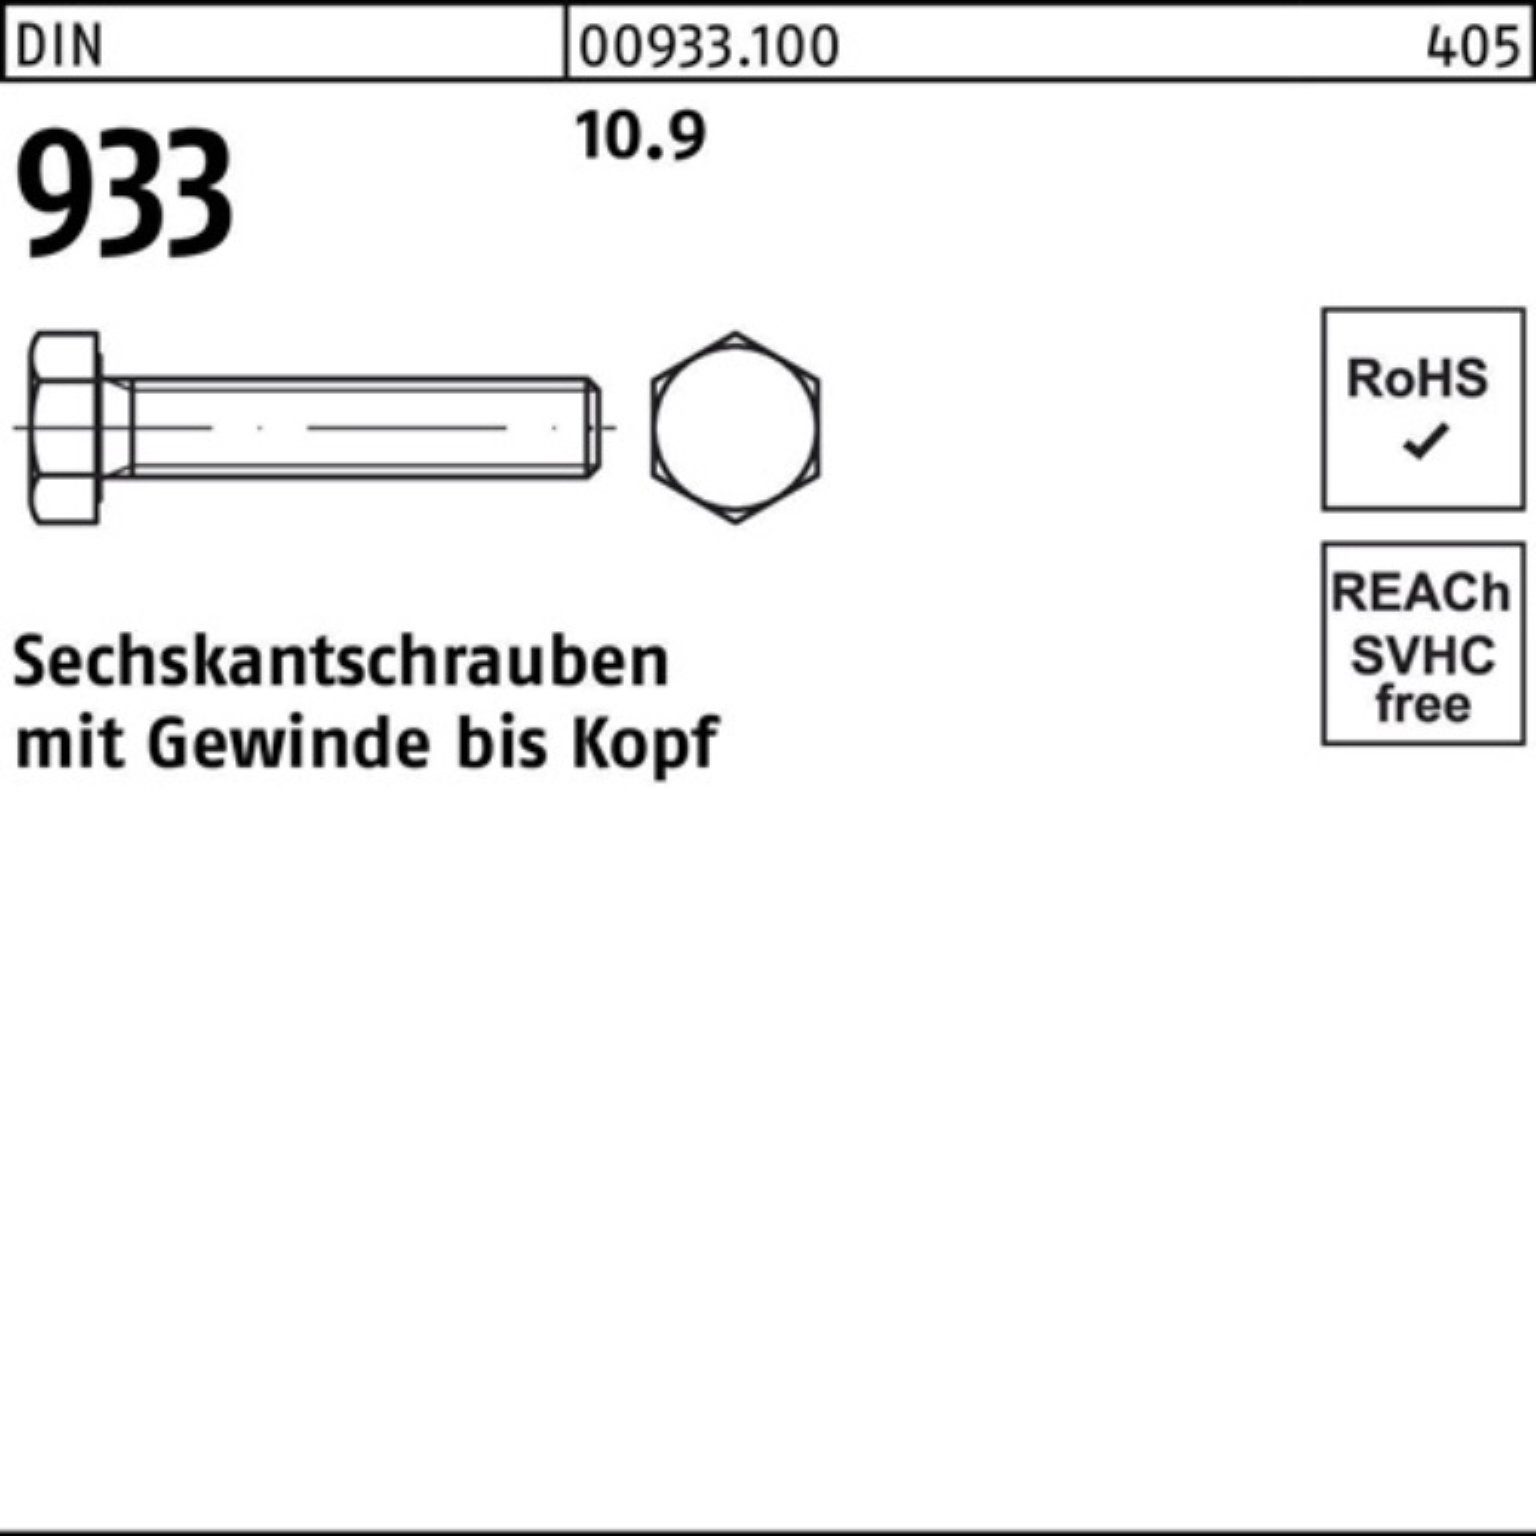 VG 100er Sechskantschraube 933 10.9 55 M22x Reyher 933 Stück DIN DIN Sechskantschraube 25 Pack